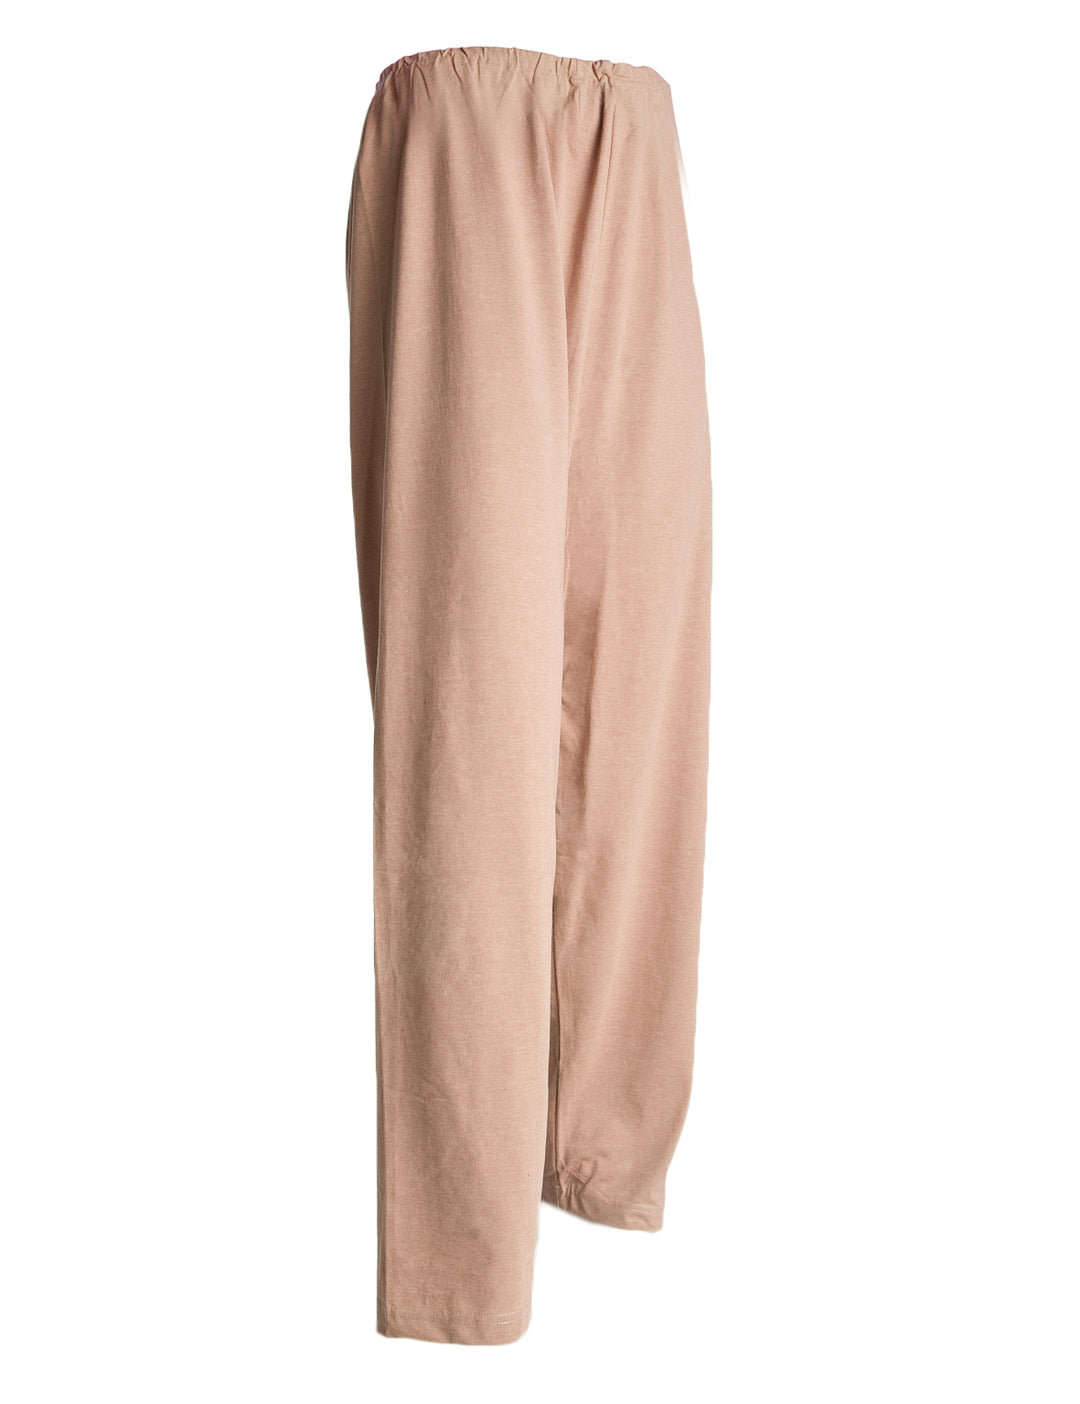 Yksivärinen vaalean ruskea pyjamanhousu. Kuminauhavyötärö. 